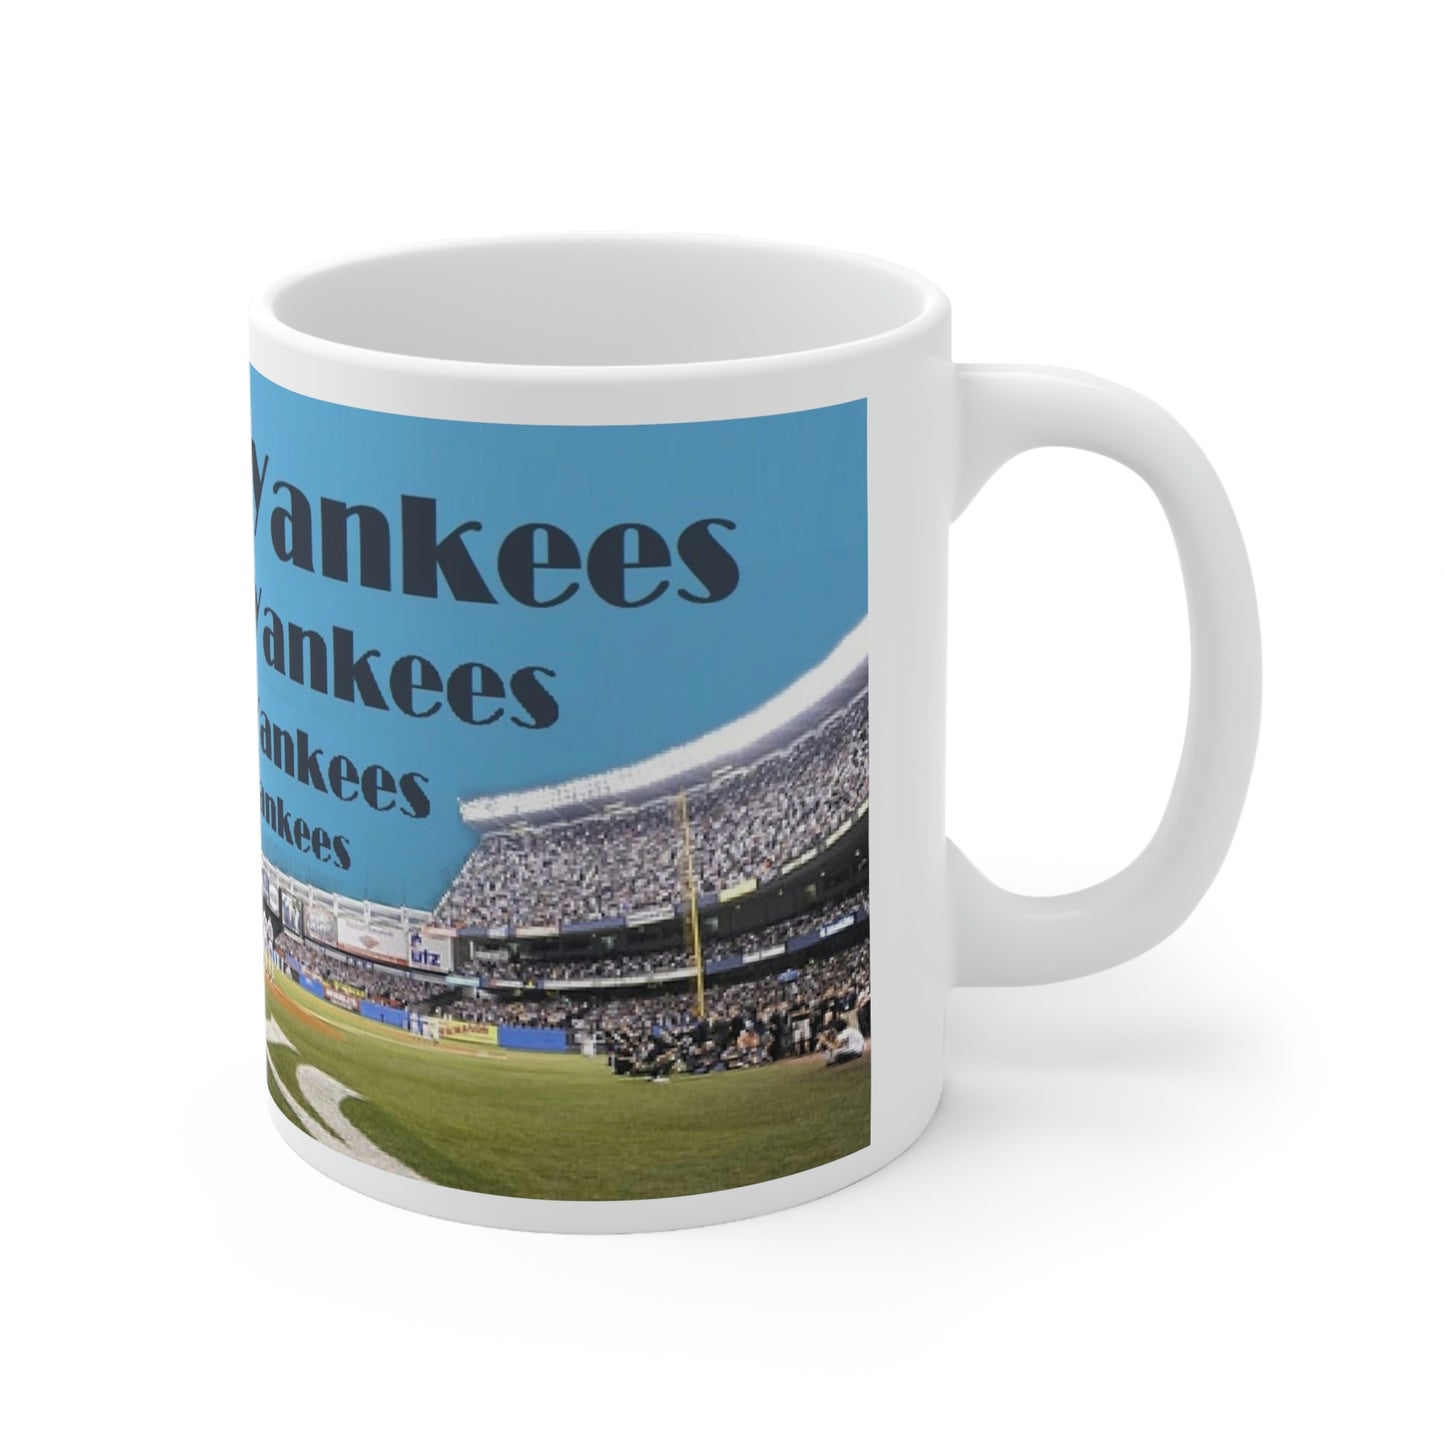 Lets Go Yankees Ceramic Mug 11oz